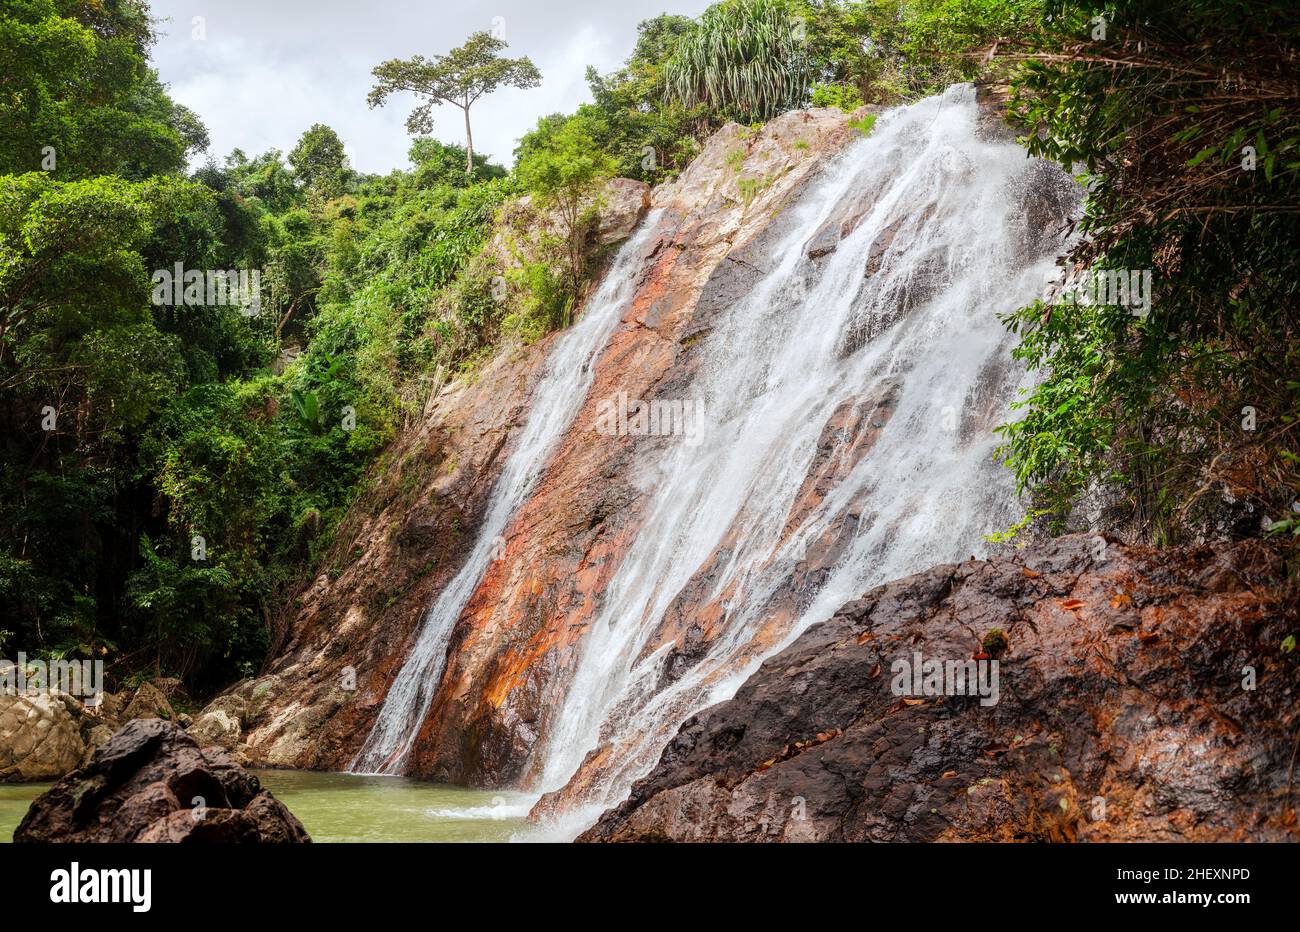 Cascade Na Muang Koh Samui Island Thailand, cascade de Namuang, chute d'eau, paysage de rochers de montagne, forêt tropicale de jungle,déplacement Banque D'Images